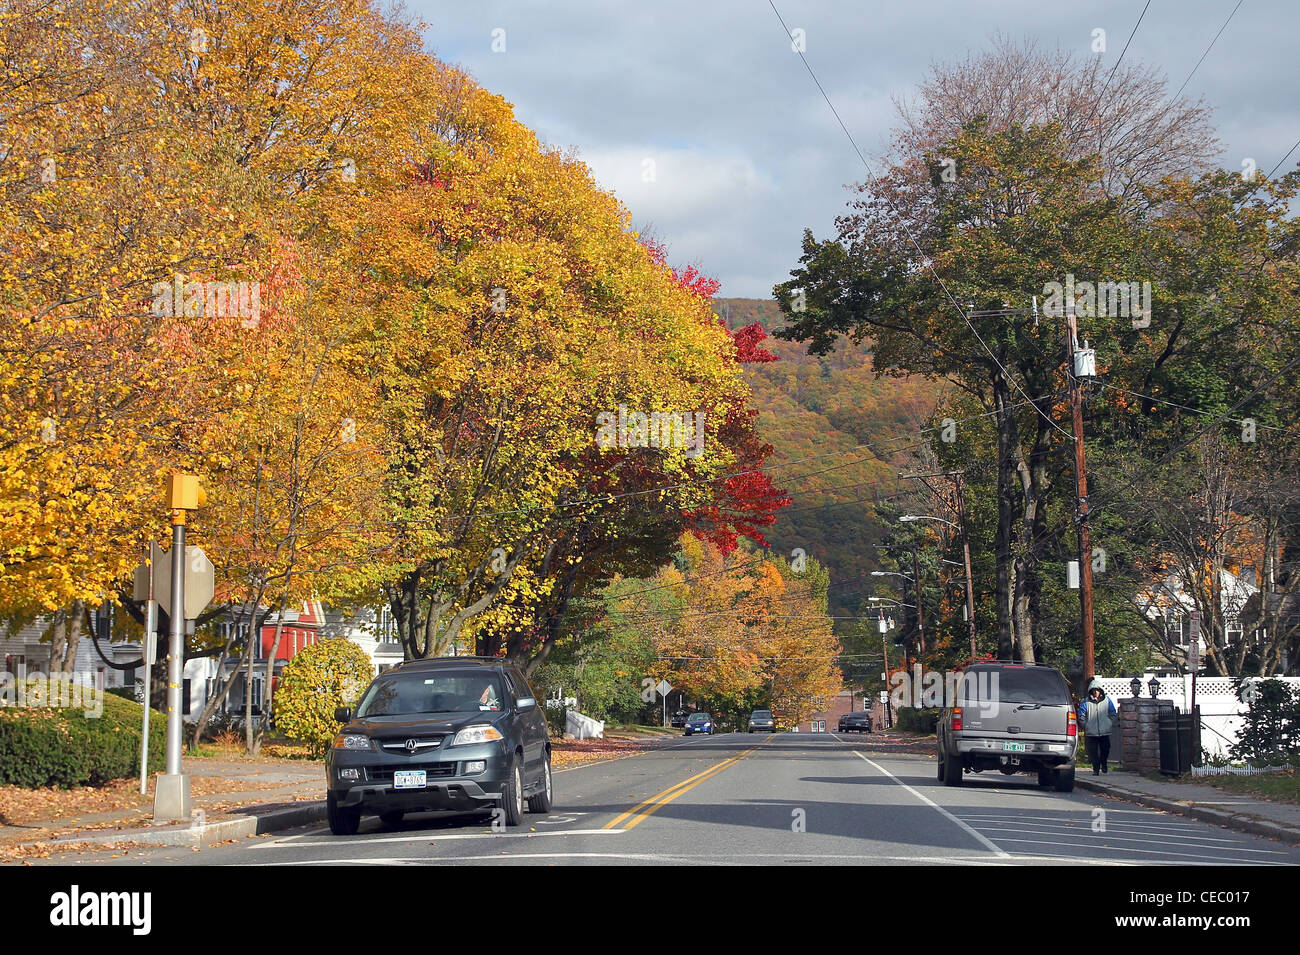 A street in autumn, Brattleboro, Vermont Stock Photo